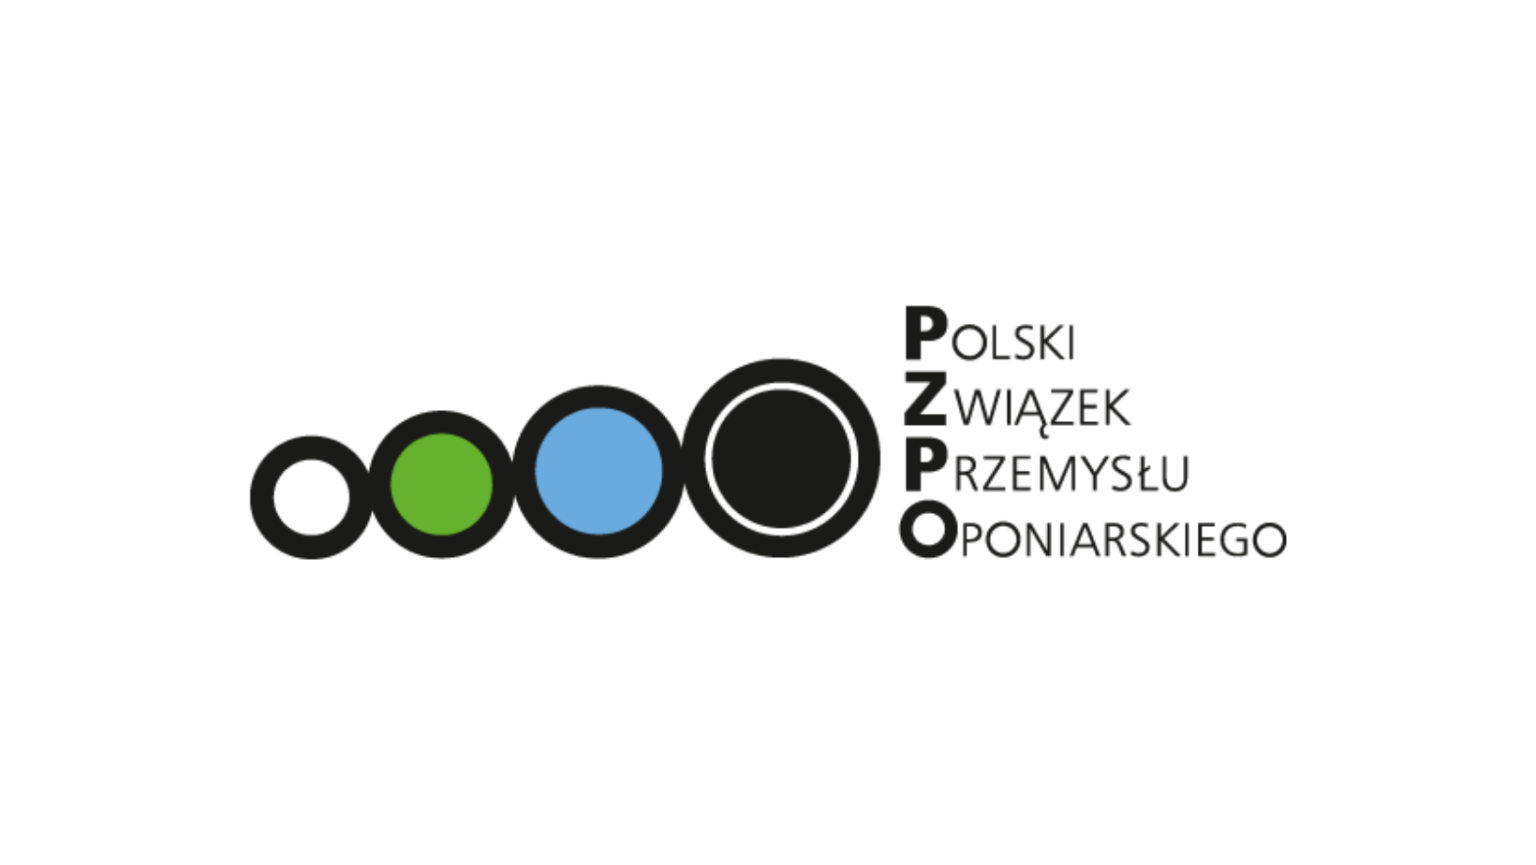 Polski Związek Przemysłu Oponiarskieg